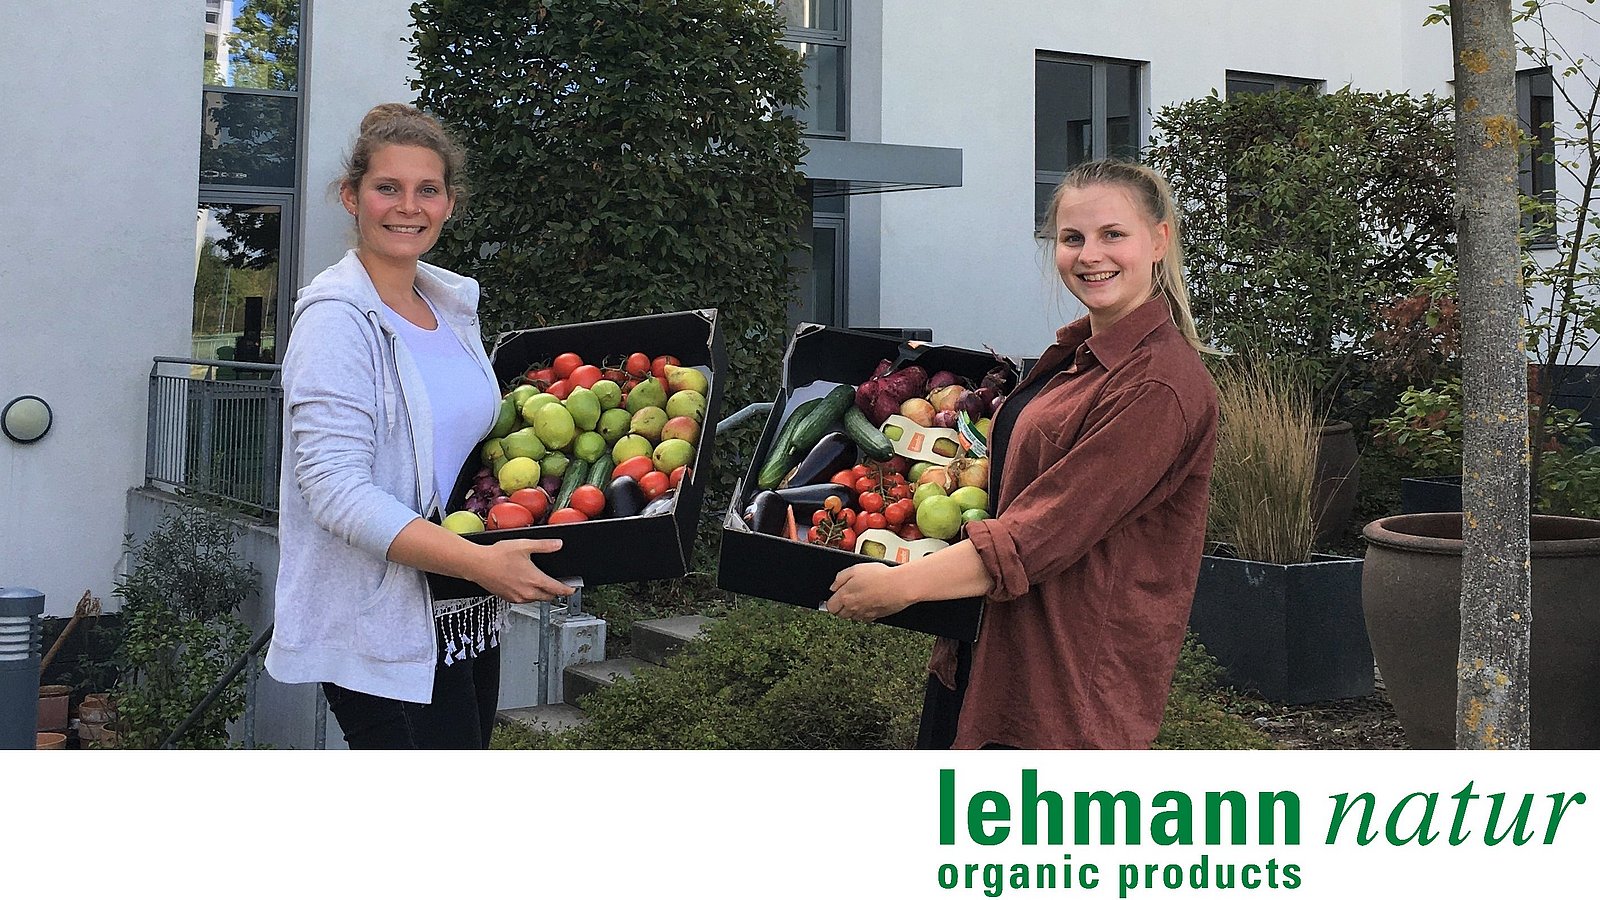 Zwei Mitarbeiterinnen von lehmann natur stehen vor einem Haus und halten Obstkisten in die Kamera.